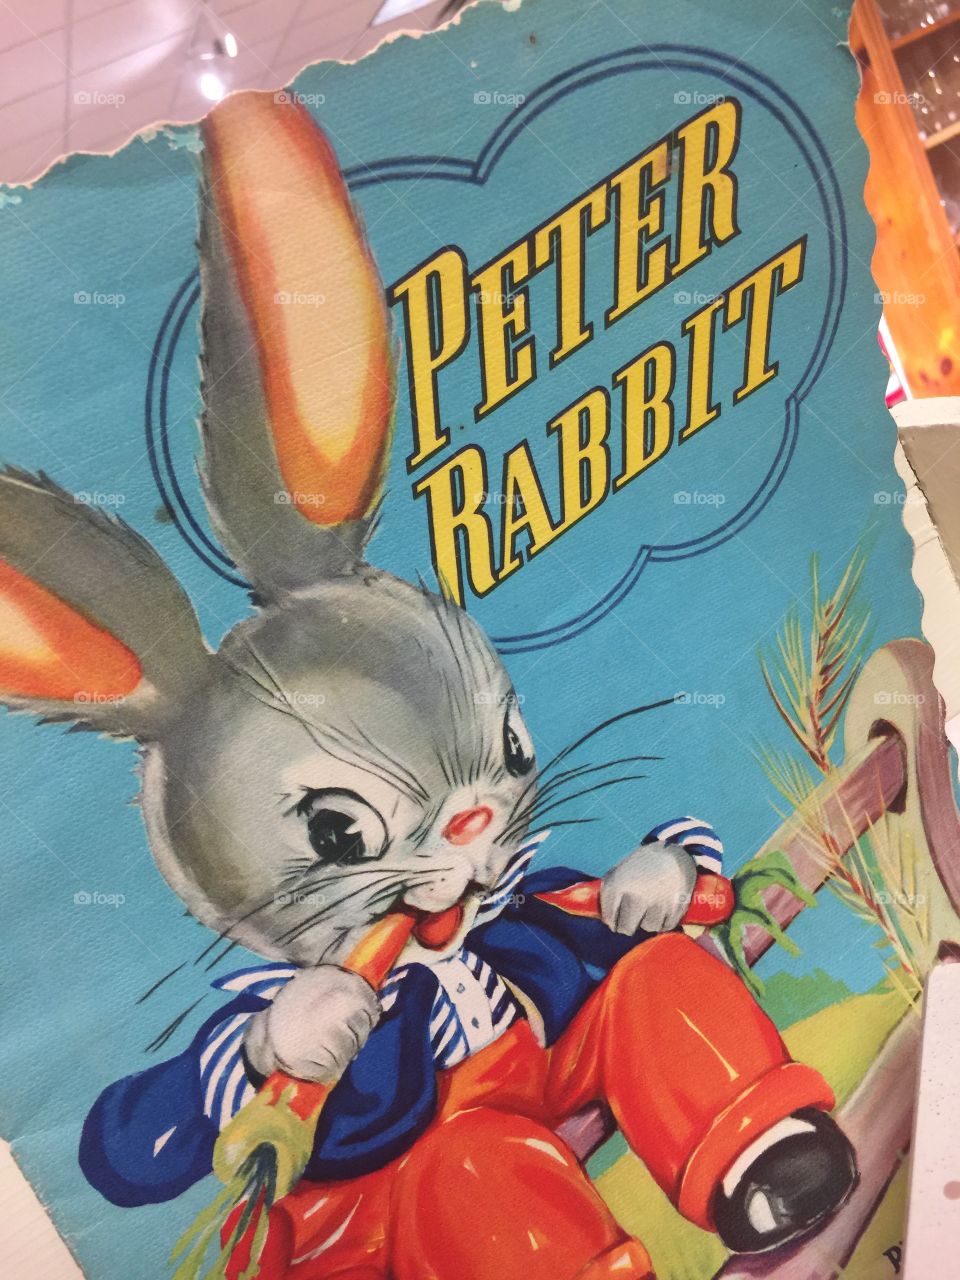 Peter rabbit 